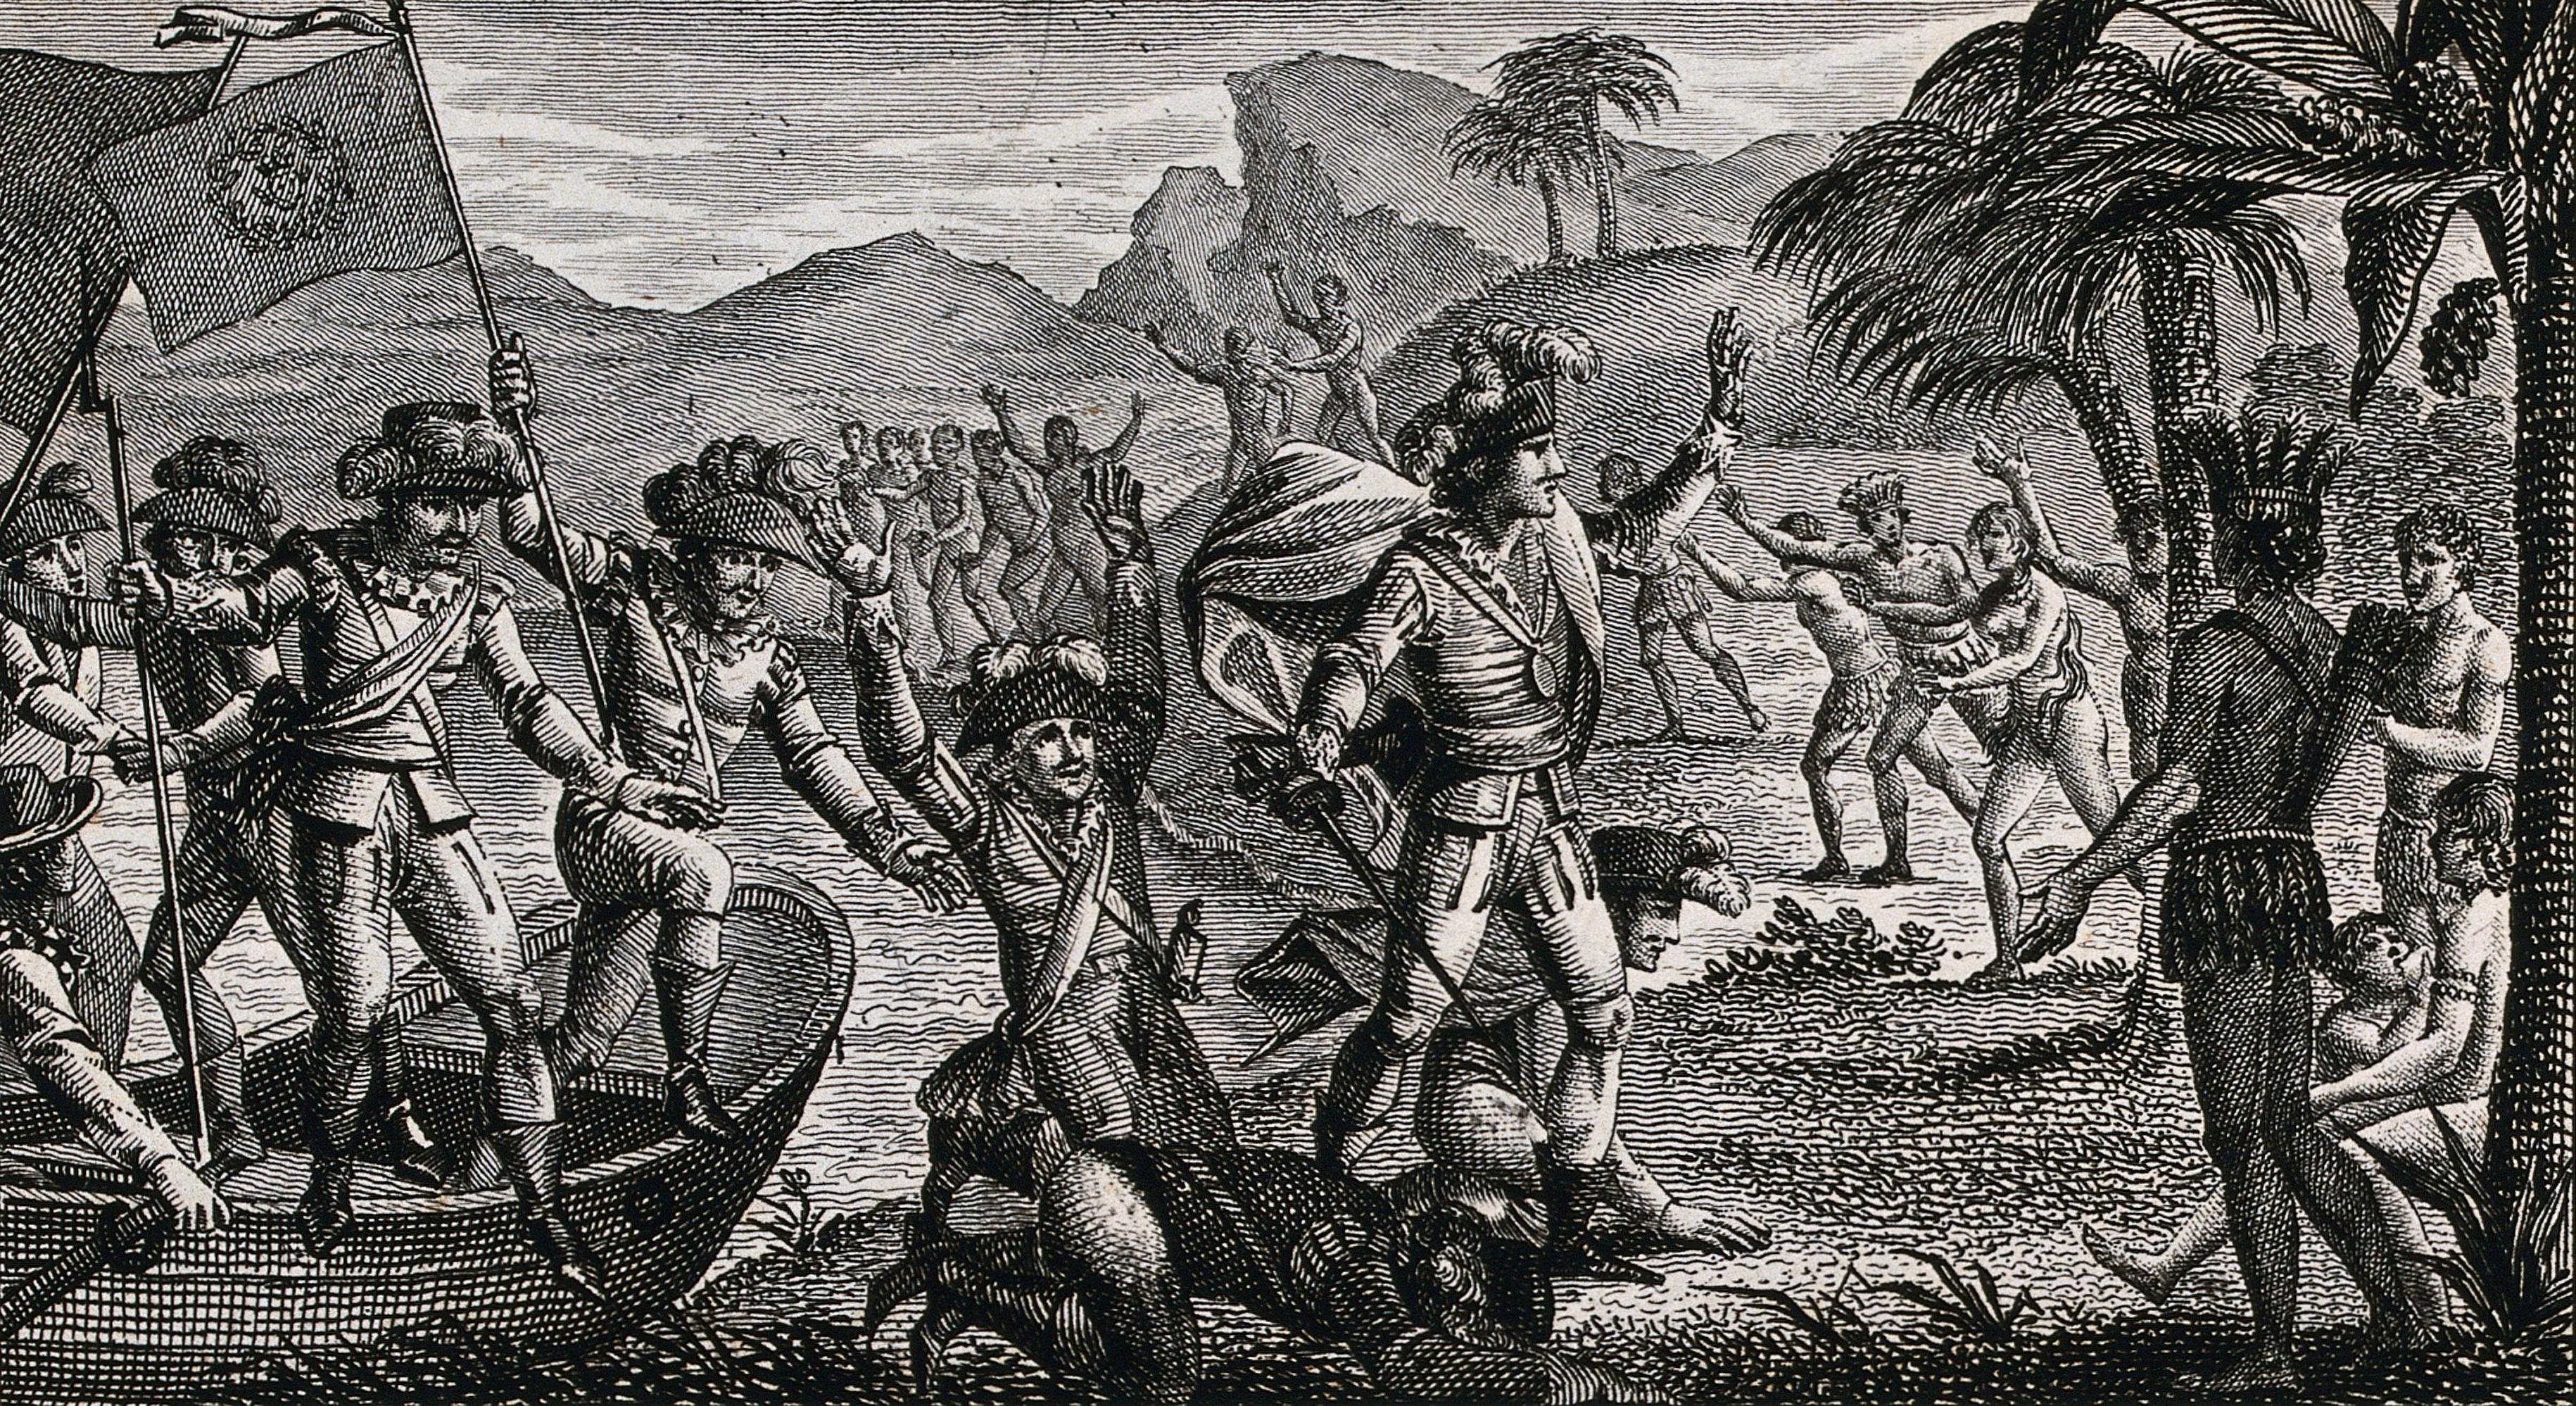 Первый европеец посетивший карибские острова южную америку. 1492 Колумб. Испанские экспедиции Христофора Колумба.